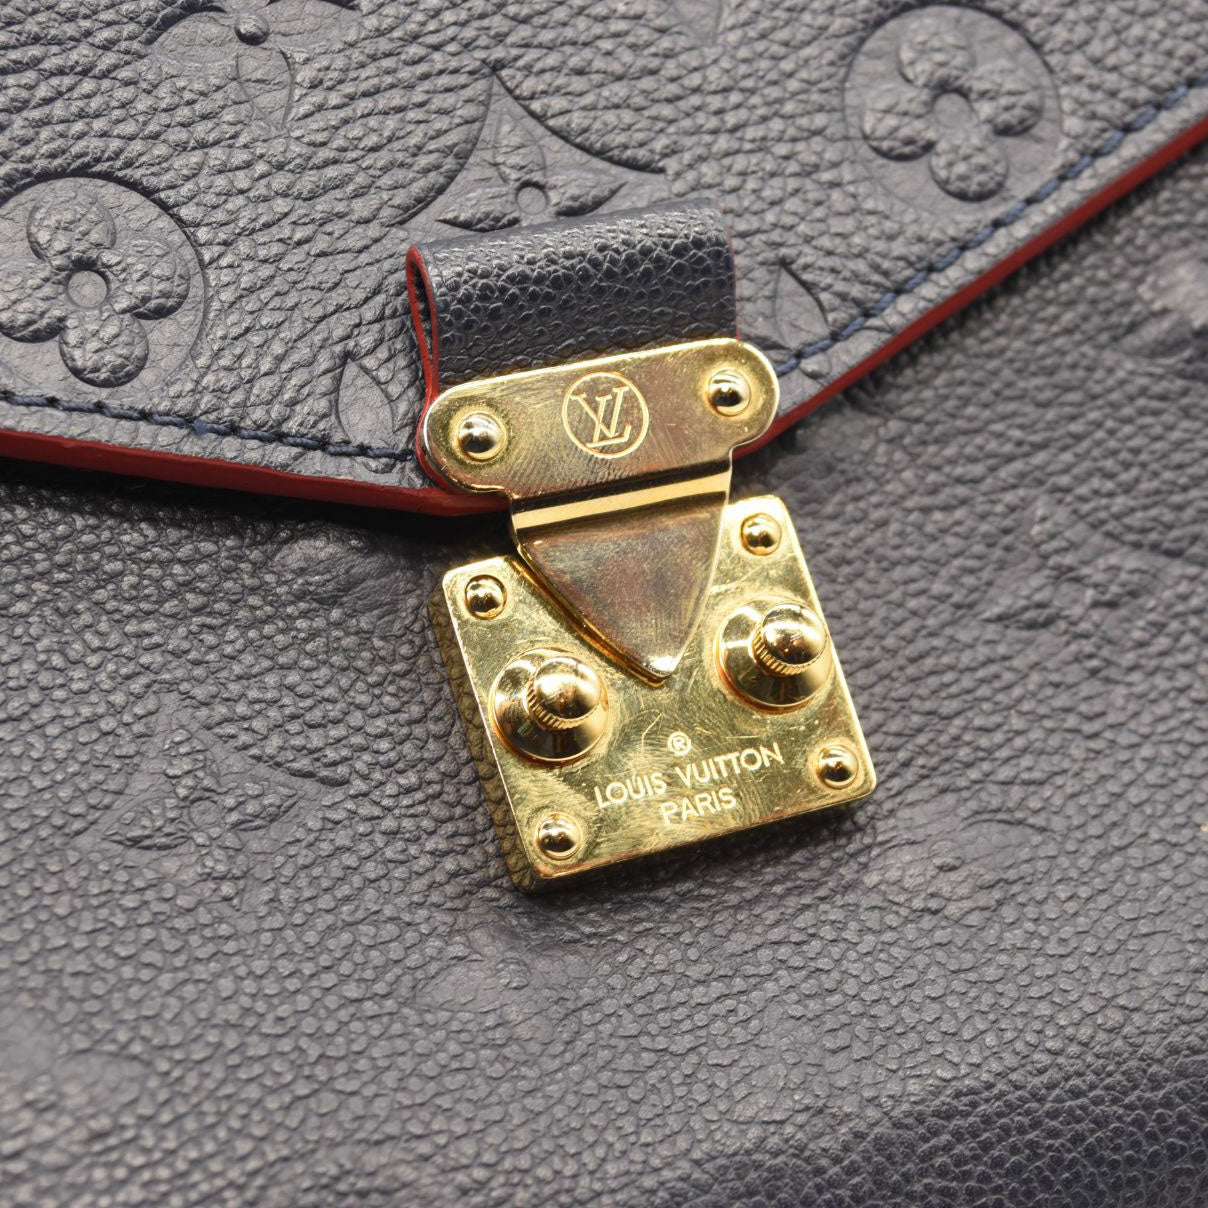 Metis Shoulder Bag in Calfskin, Gold Hardware